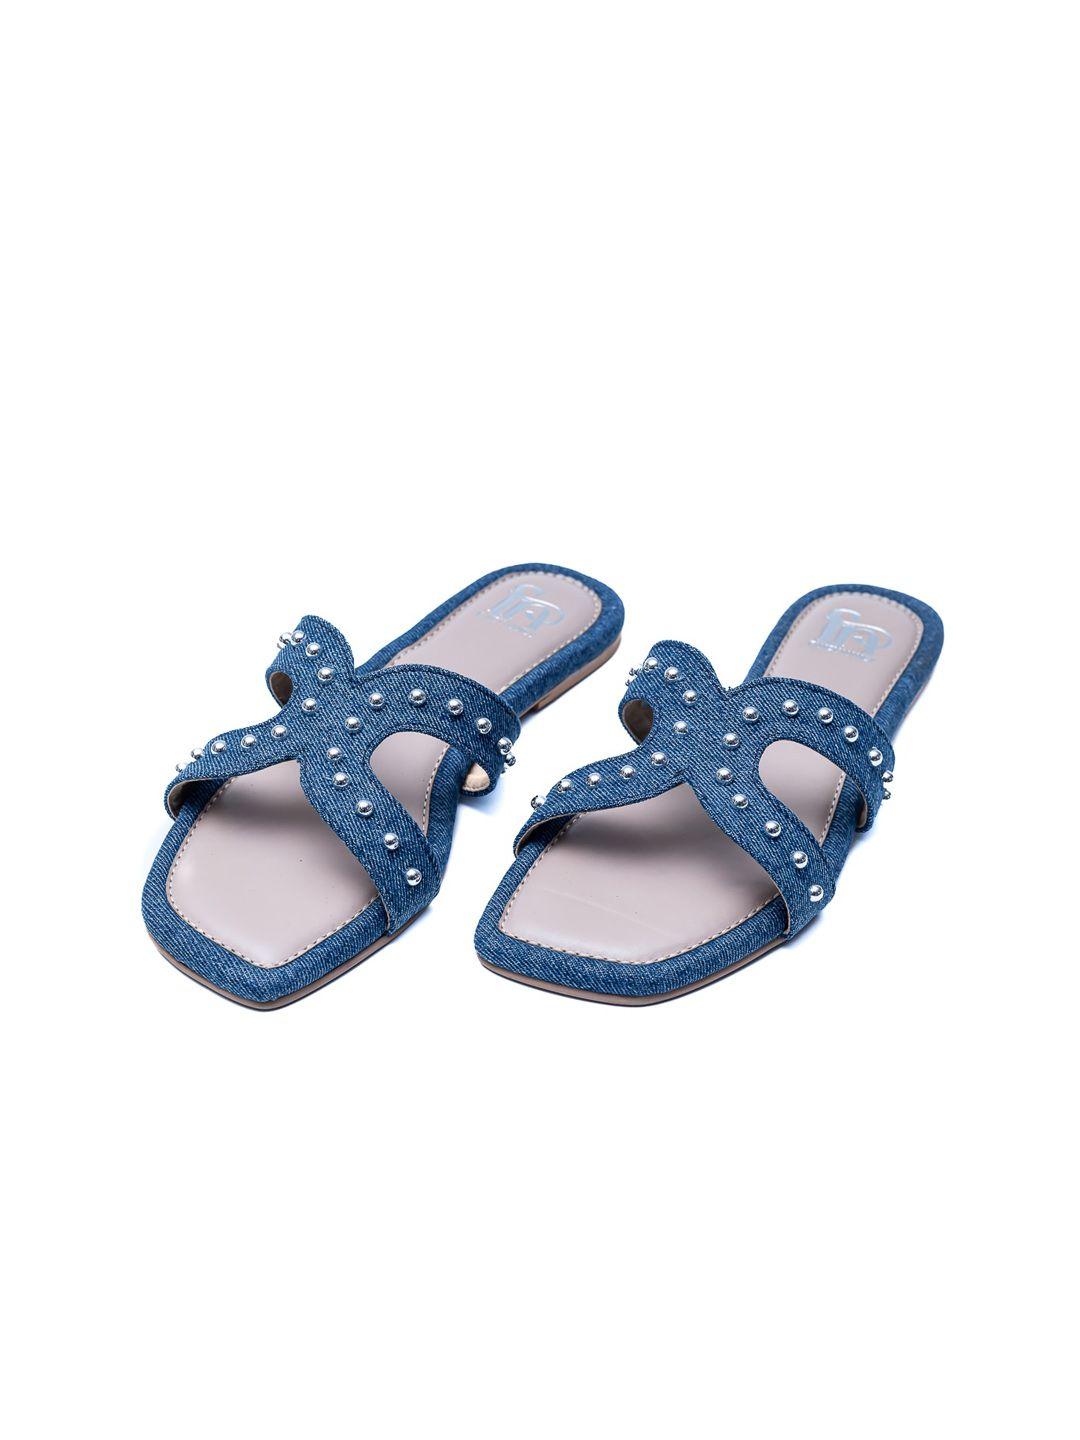 dapper feet-fancy nancy textured embellished open toe flats